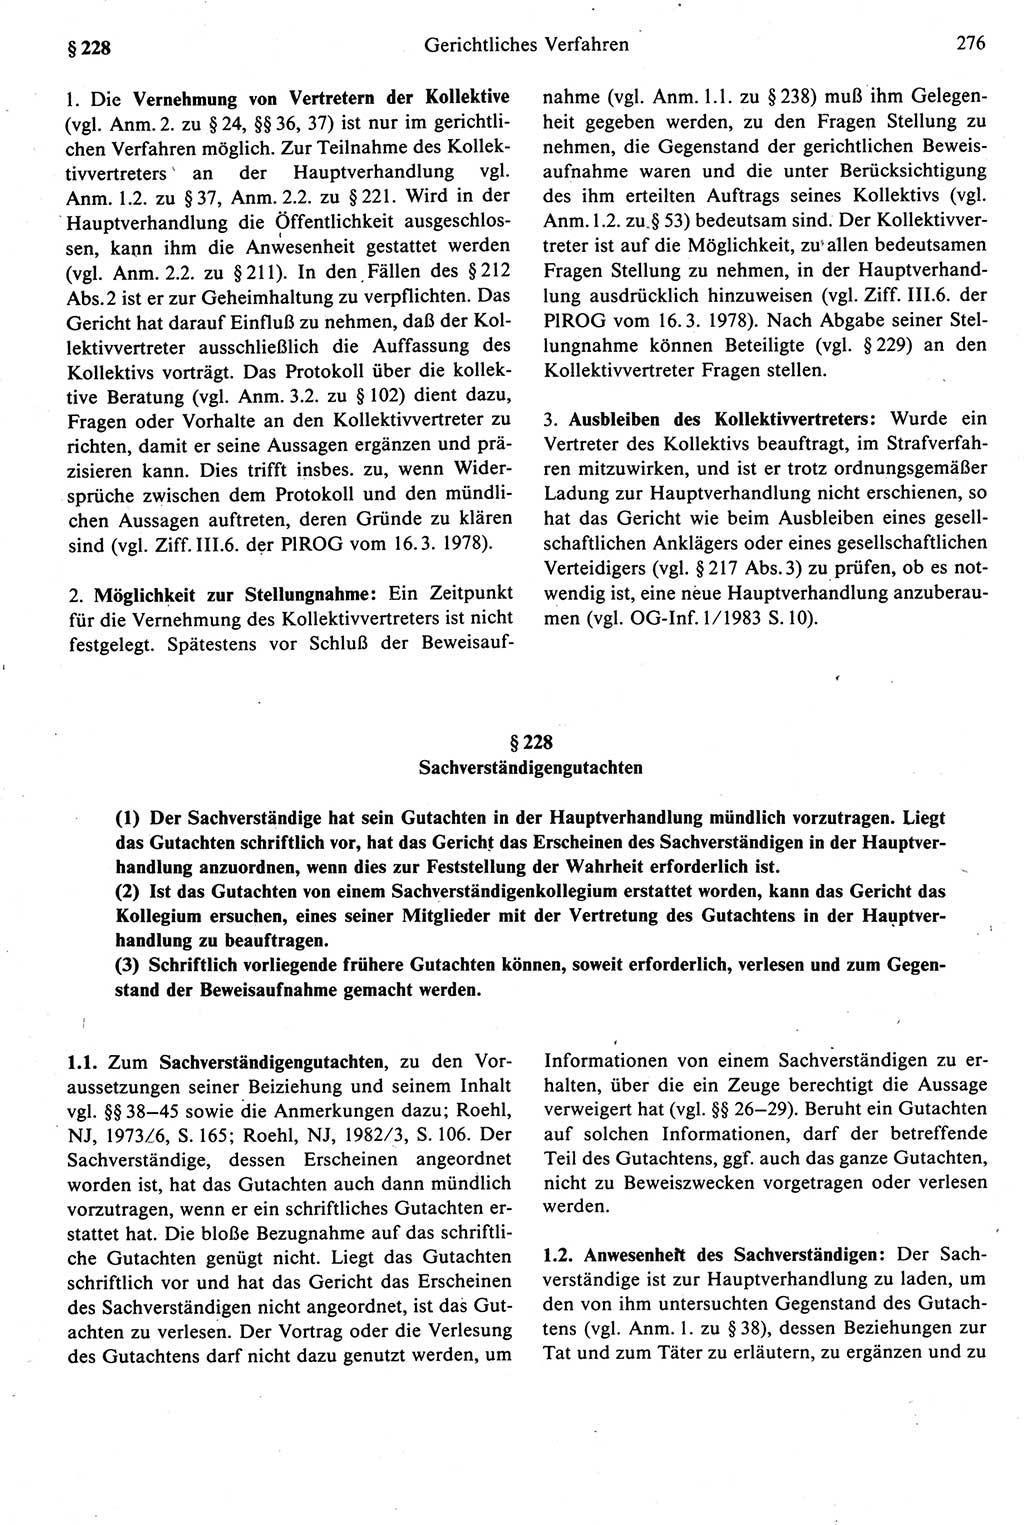 Strafprozeßrecht der DDR [Deutsche Demokratische Republik], Kommentar zur Strafprozeßordnung (StPO) 1987, Seite 276 (Strafprozeßr. DDR Komm. StPO 1987, S. 276)